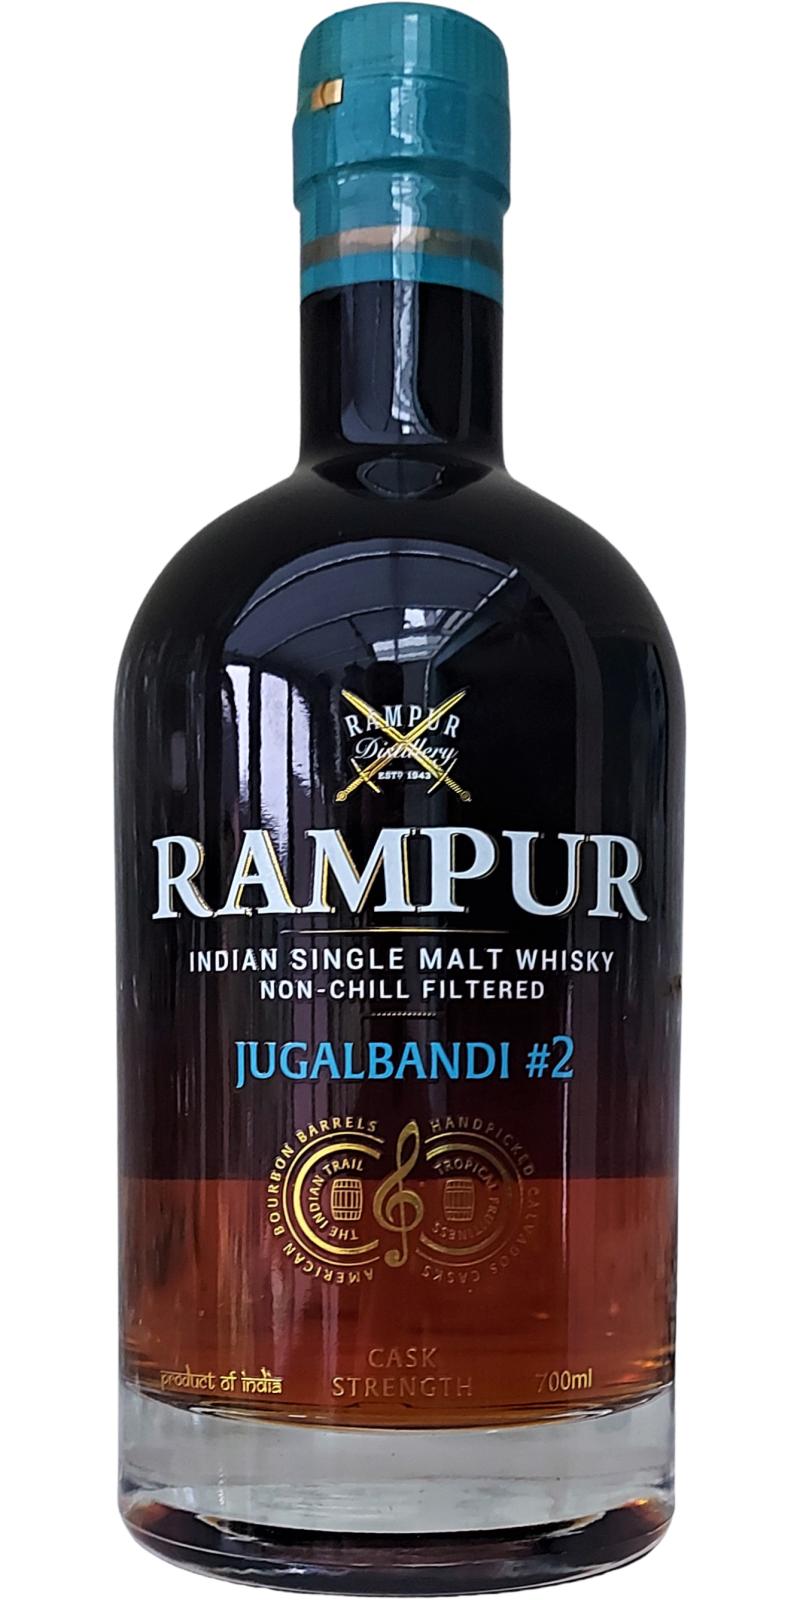 Rampur Jugalbandi #2 Indian Single Malt Whisky Calvados finish 56.3% 700ml